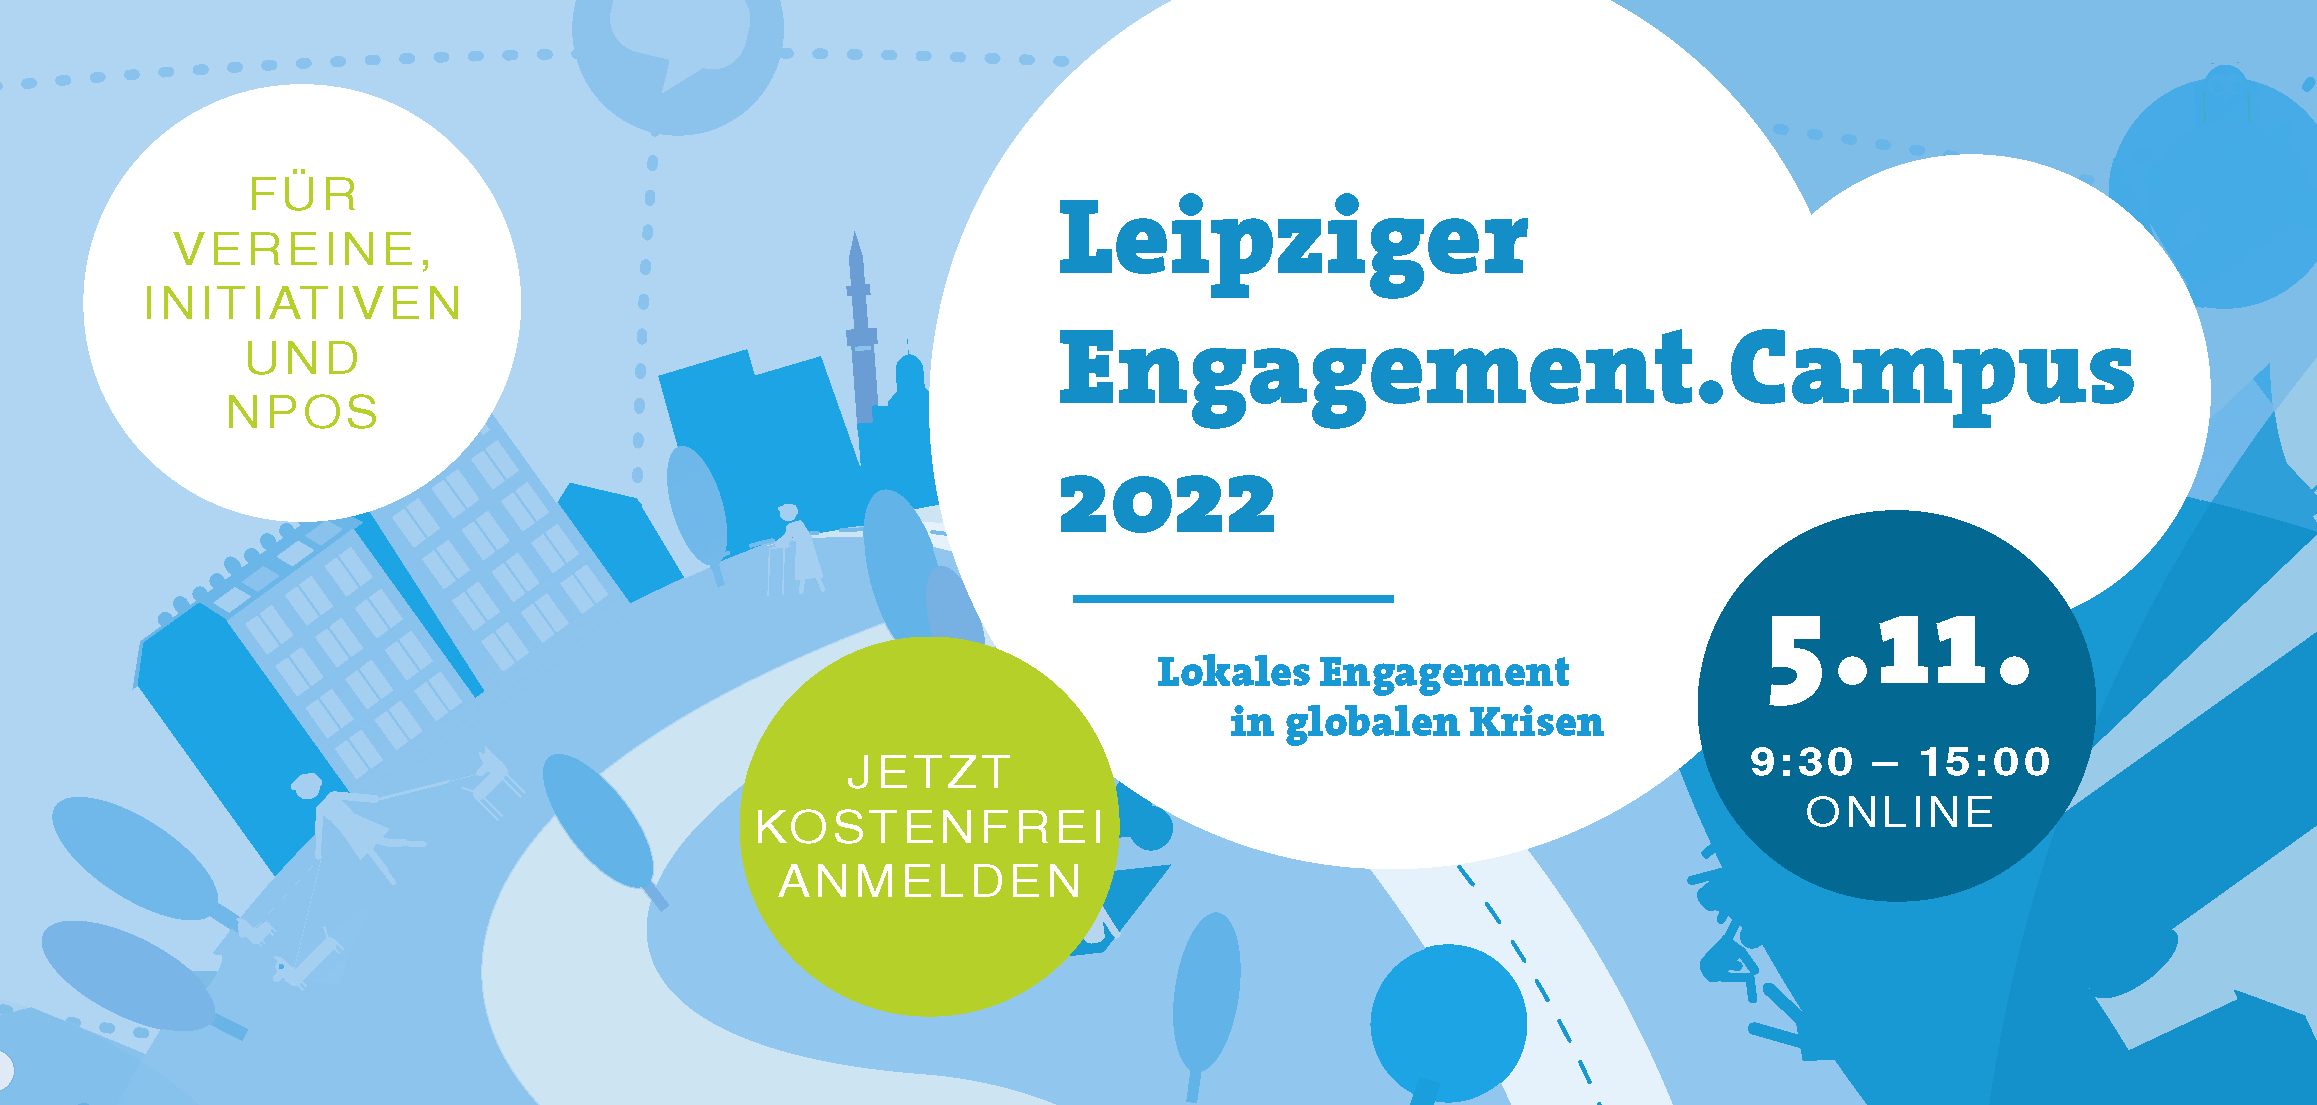 Schriftzug "Leipziger Engagement.Campus 2022 - Lokales Engagement in globalen Krisen". Im Hintergrund in verschiedenen Blautönen eine Stadt mit Häusern, Bäumen, Wegen und Menschen, die verschiedene Aktivitäten ausüben.